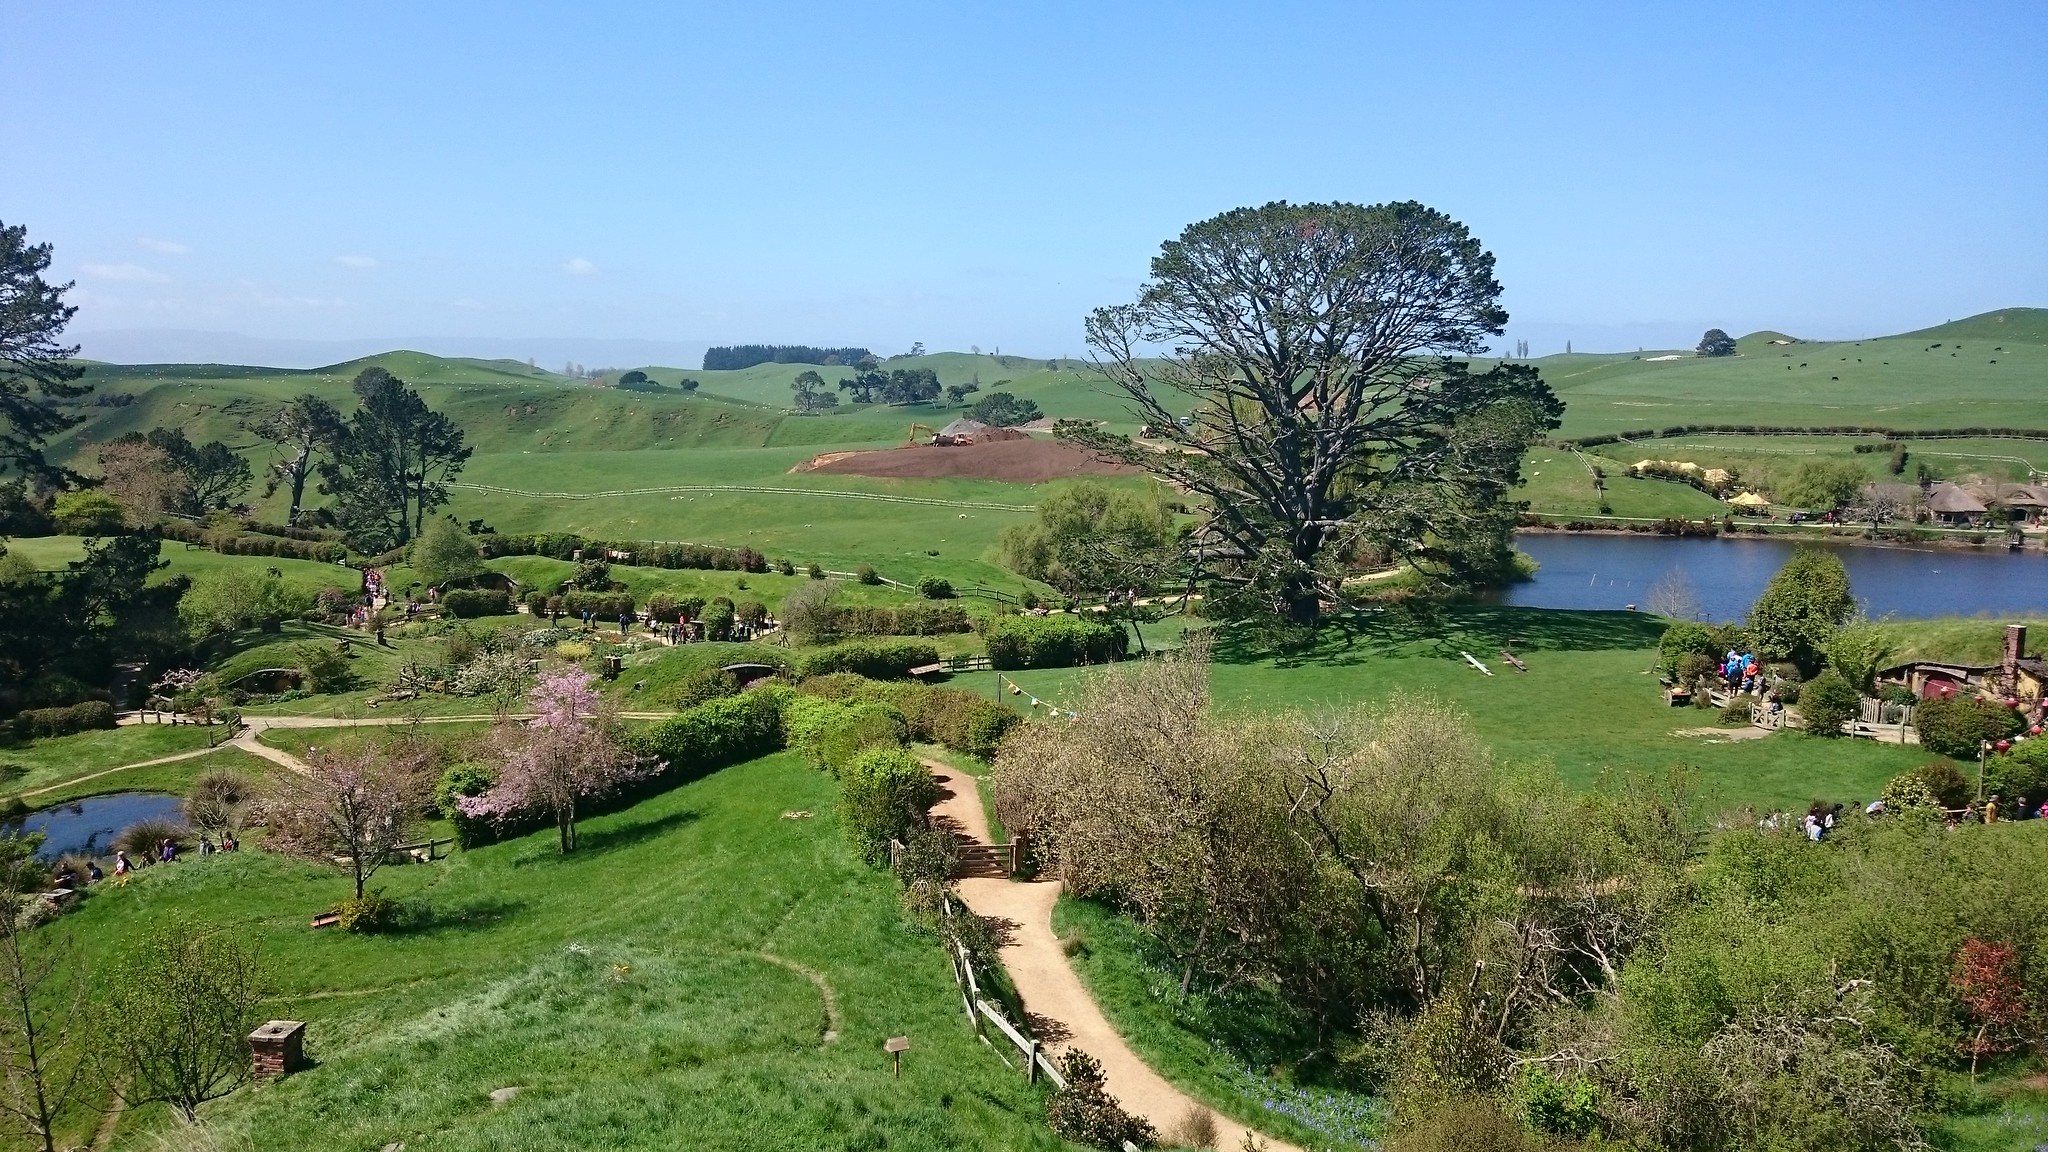 Nueva Zelanda, Aotearoa: El viaje de mi vida por la Tierra Media - Blogs de Nueva Zelanda - Día 7 - 6/10/15 - Hobbiton, Rotorua, Mitai Maori Village y Rainbow Springs (19)